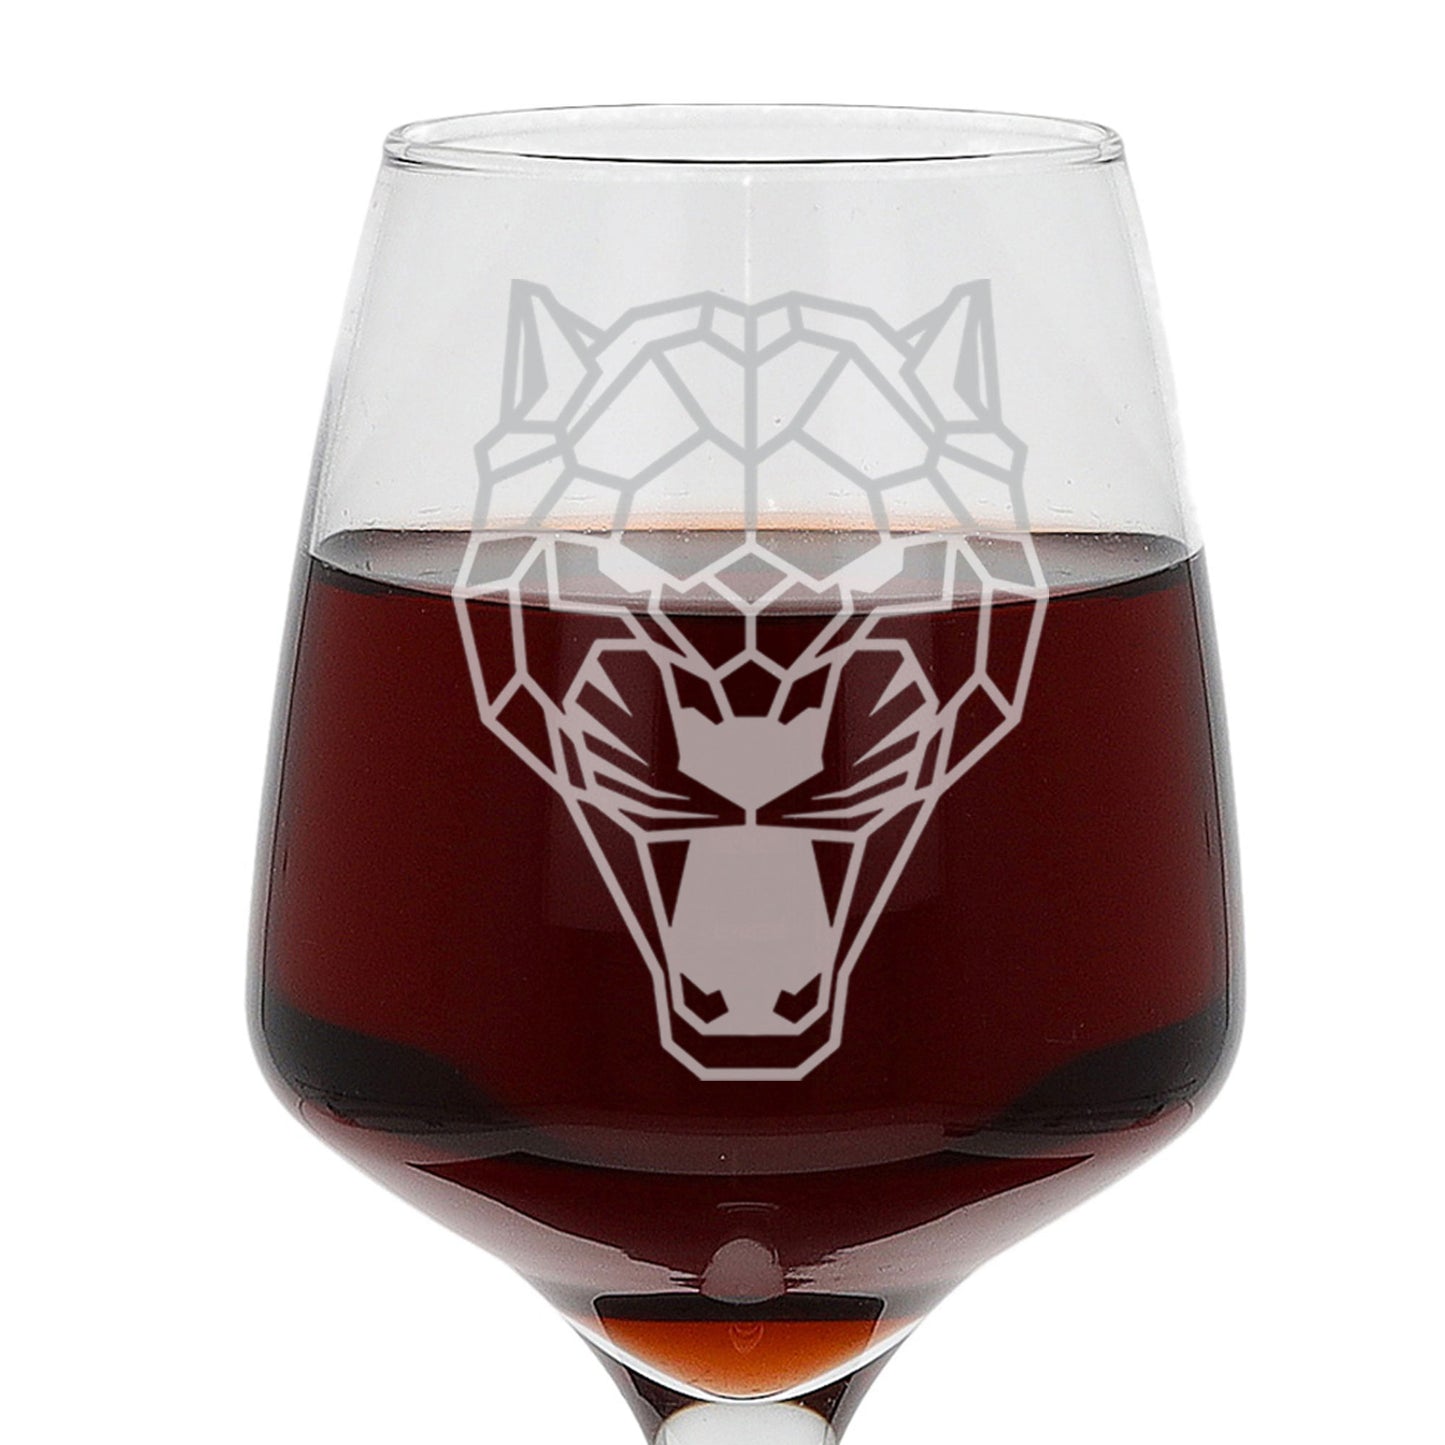 Jaguar Engraved Wine Glass  - Always Looking Good -   